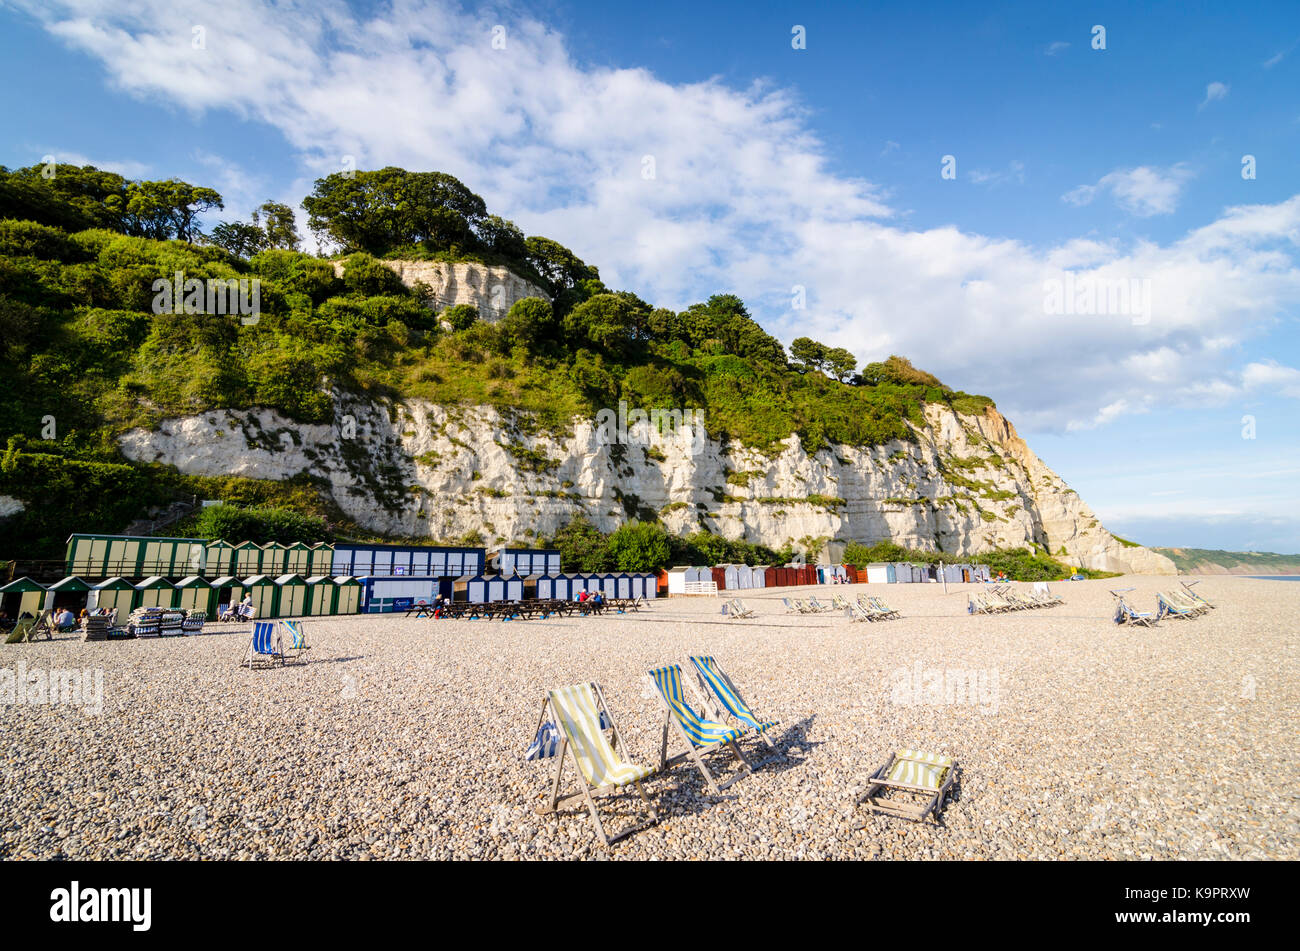 Sedie a sdraio sulla spiaggia di birra, Inglese Mare città costiera, East  Devon Coast, England, Regno Unito Foto stock - Alamy